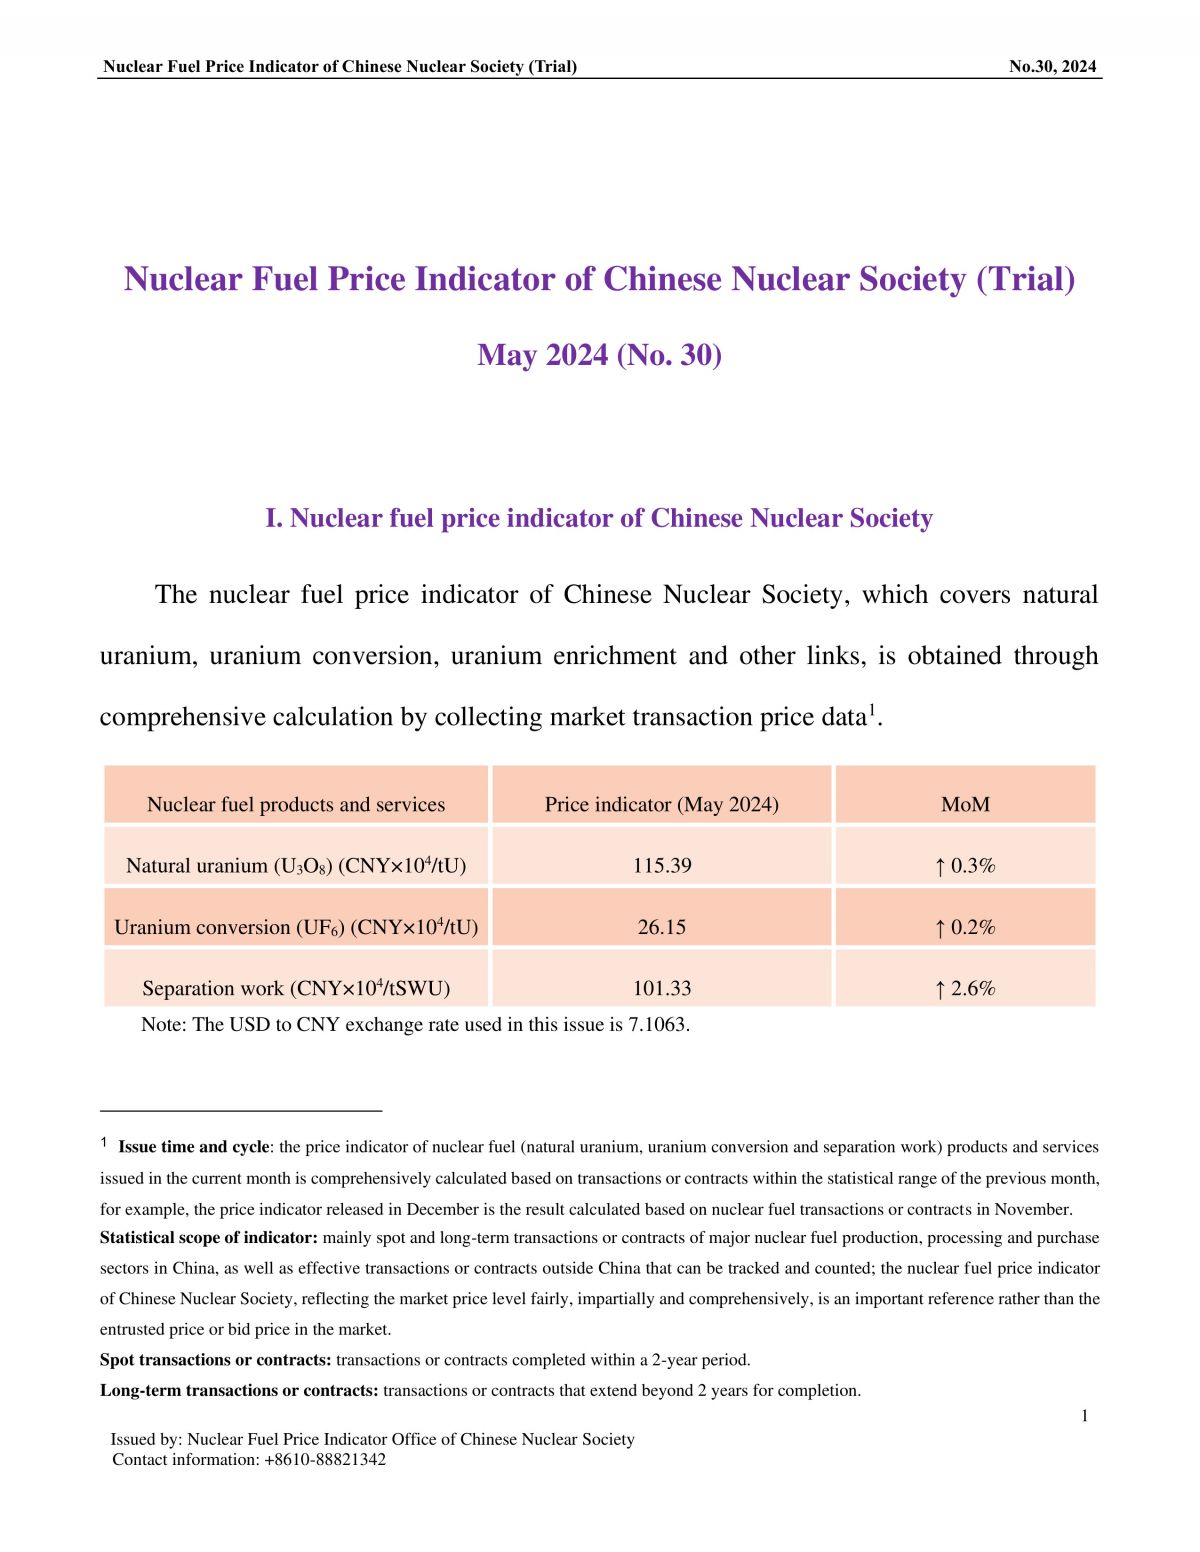 中国核学会核燃料价格指数(试运行)（2024年5月,总第30期）_EN-final-1.jpg